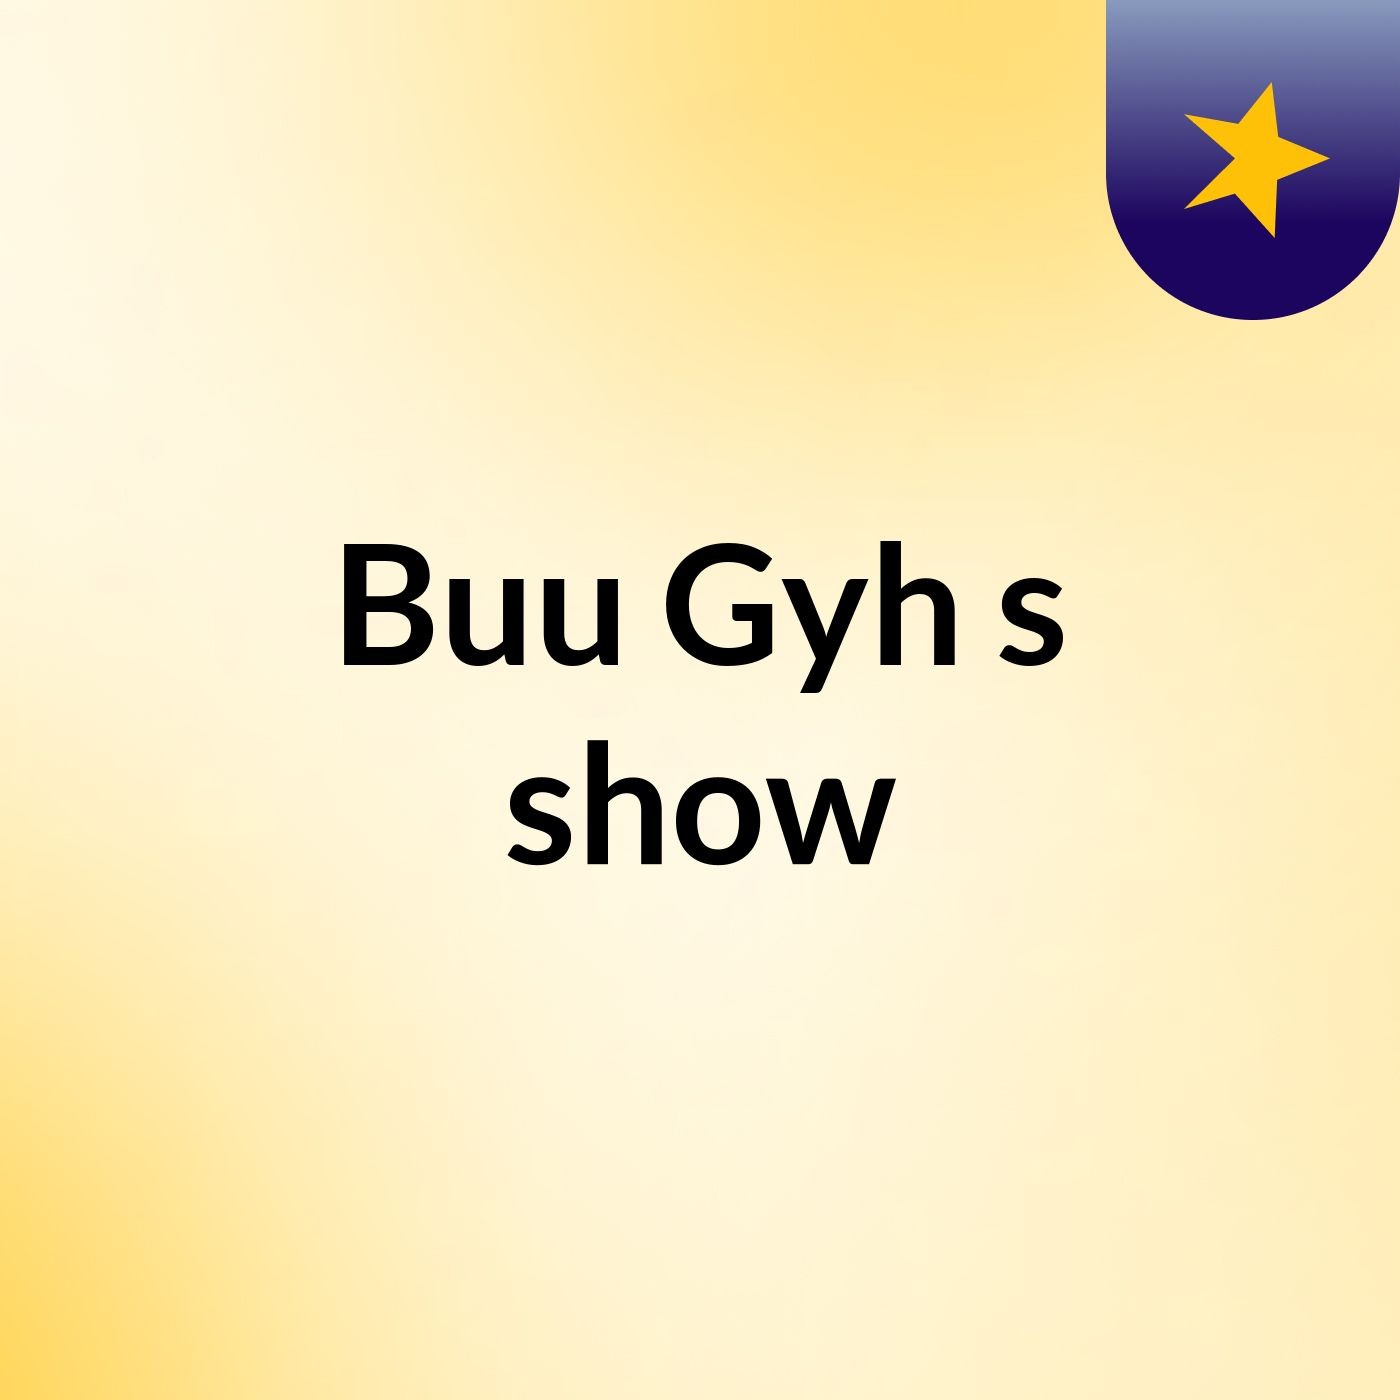 Buu Gyh's show:Buu Gyh